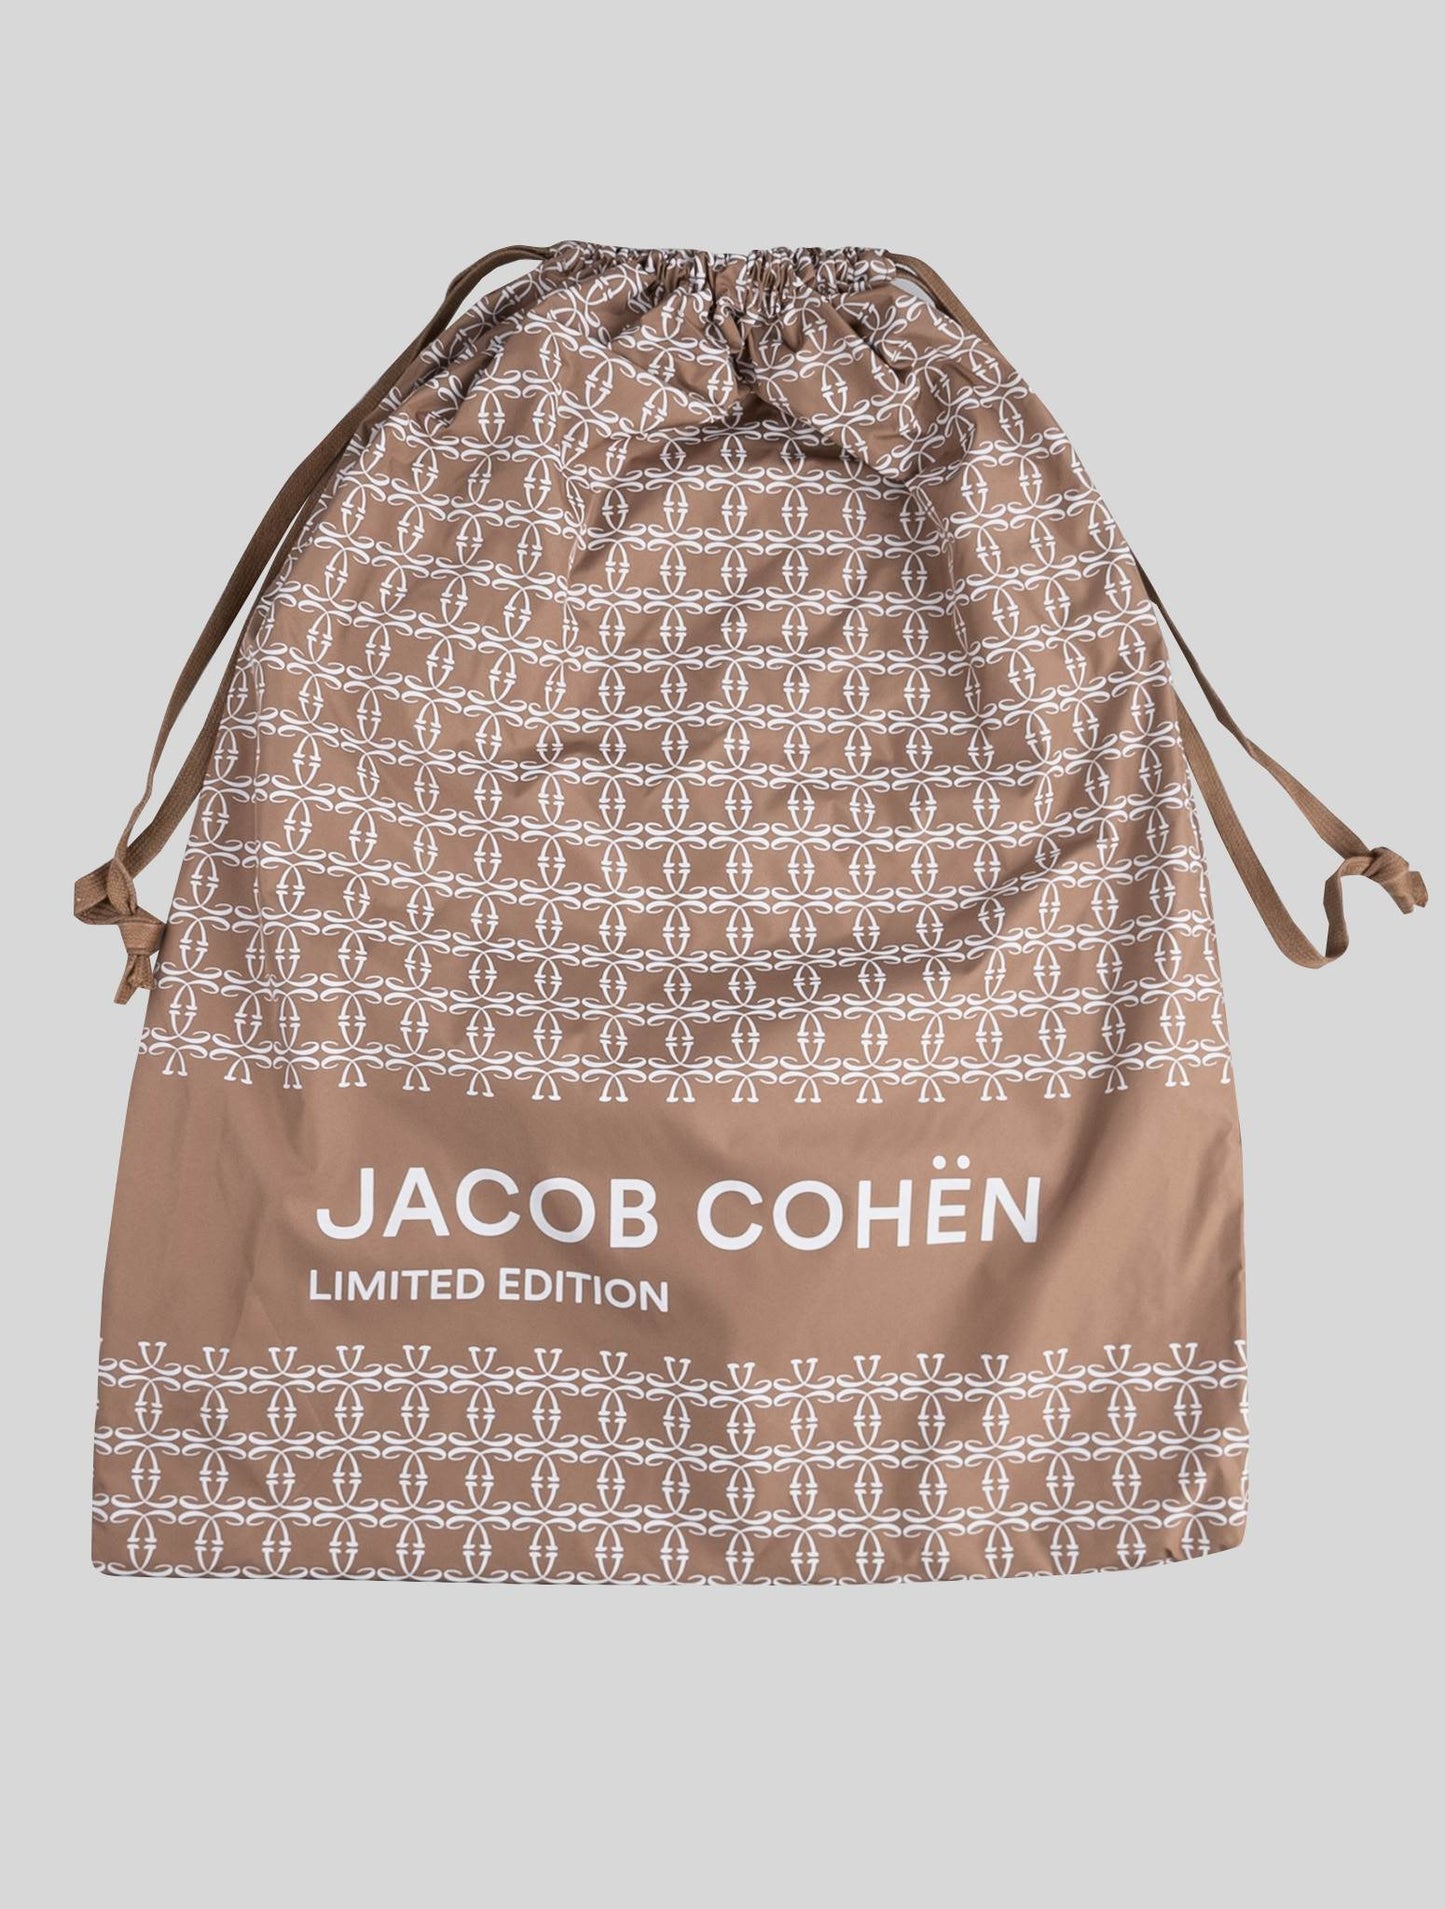 Jacob Cohen Blue Cotton Pl Ea Jeans Edición Limitada